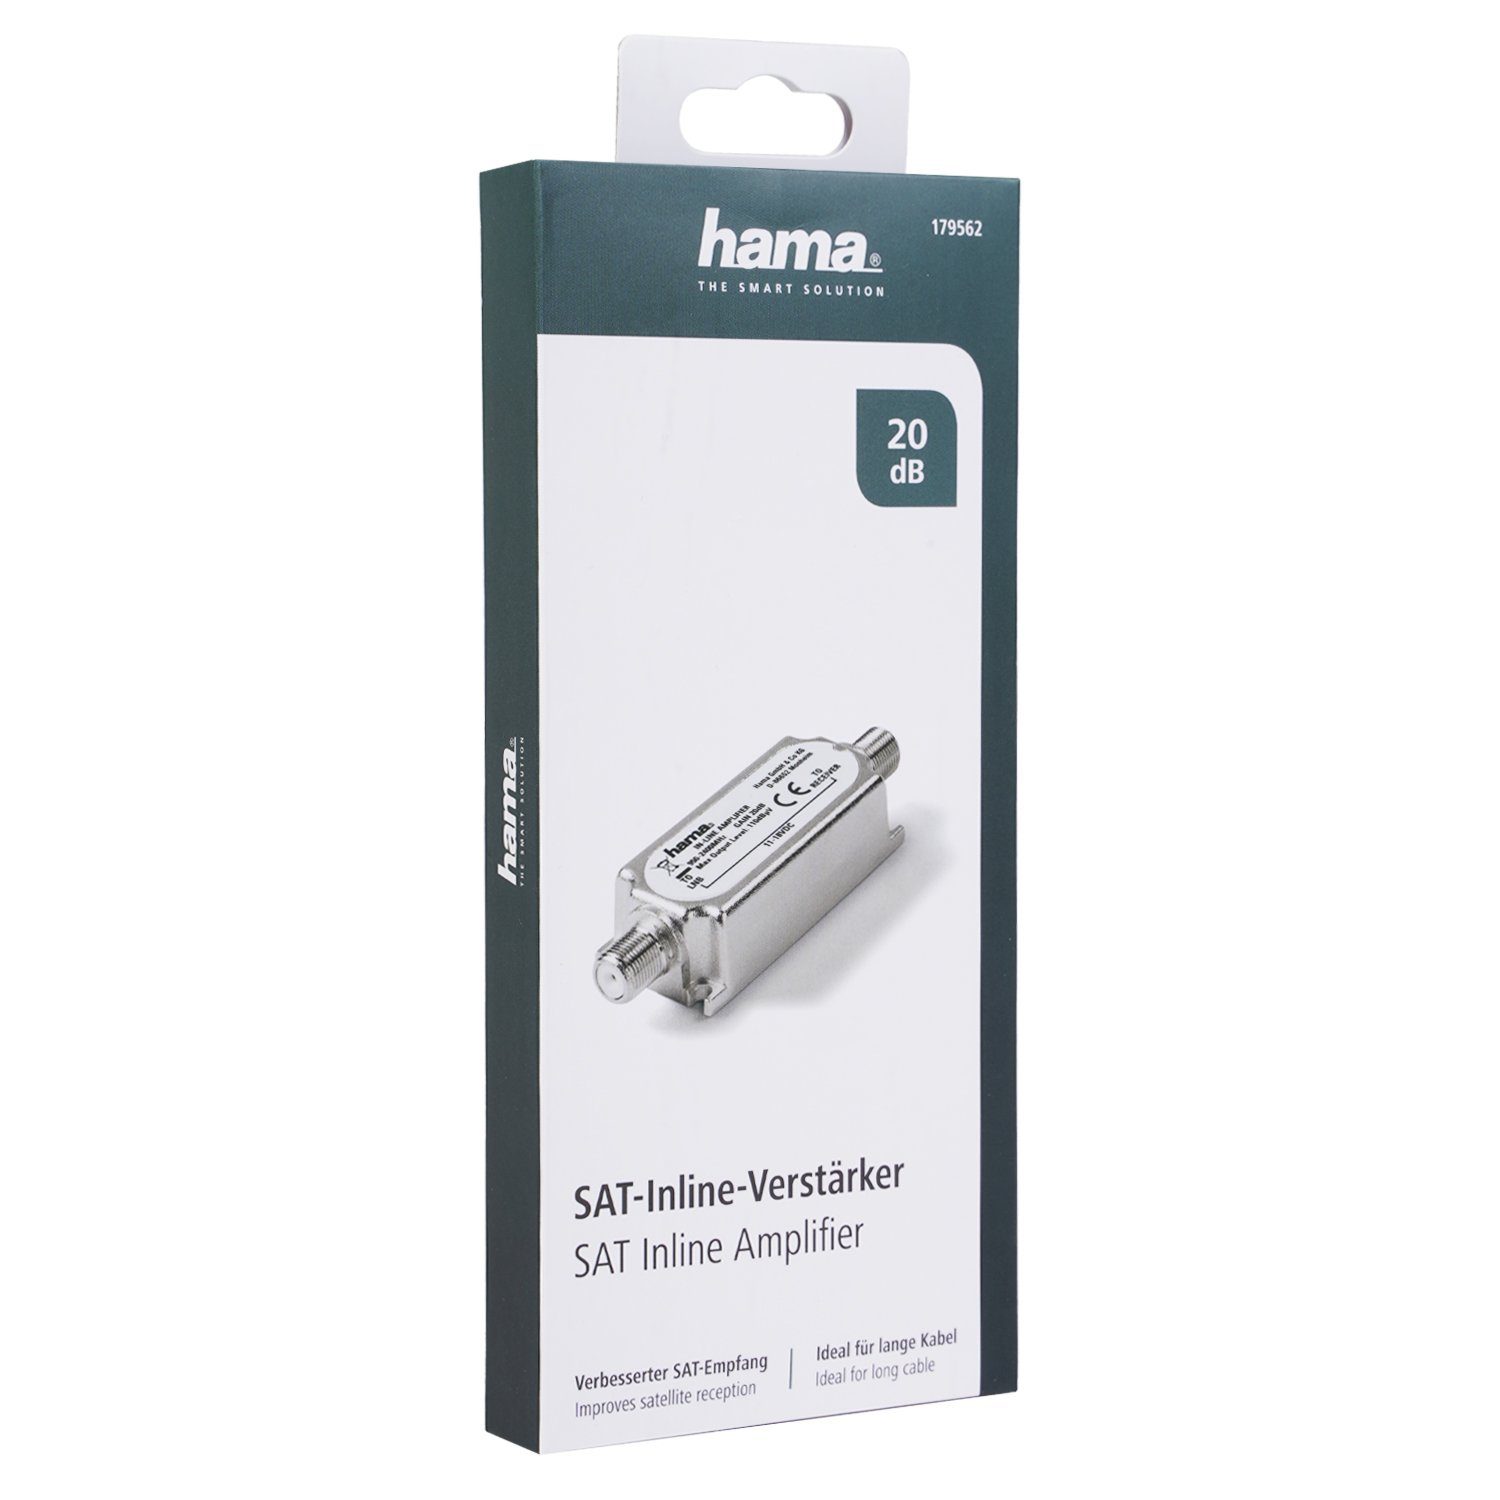 Hama SAT Inline Verstärker 20dB Signalverstärker Audioverstärker DVB-T2) LNB für auch Sat-Verstärker (DVB-S2 Digital